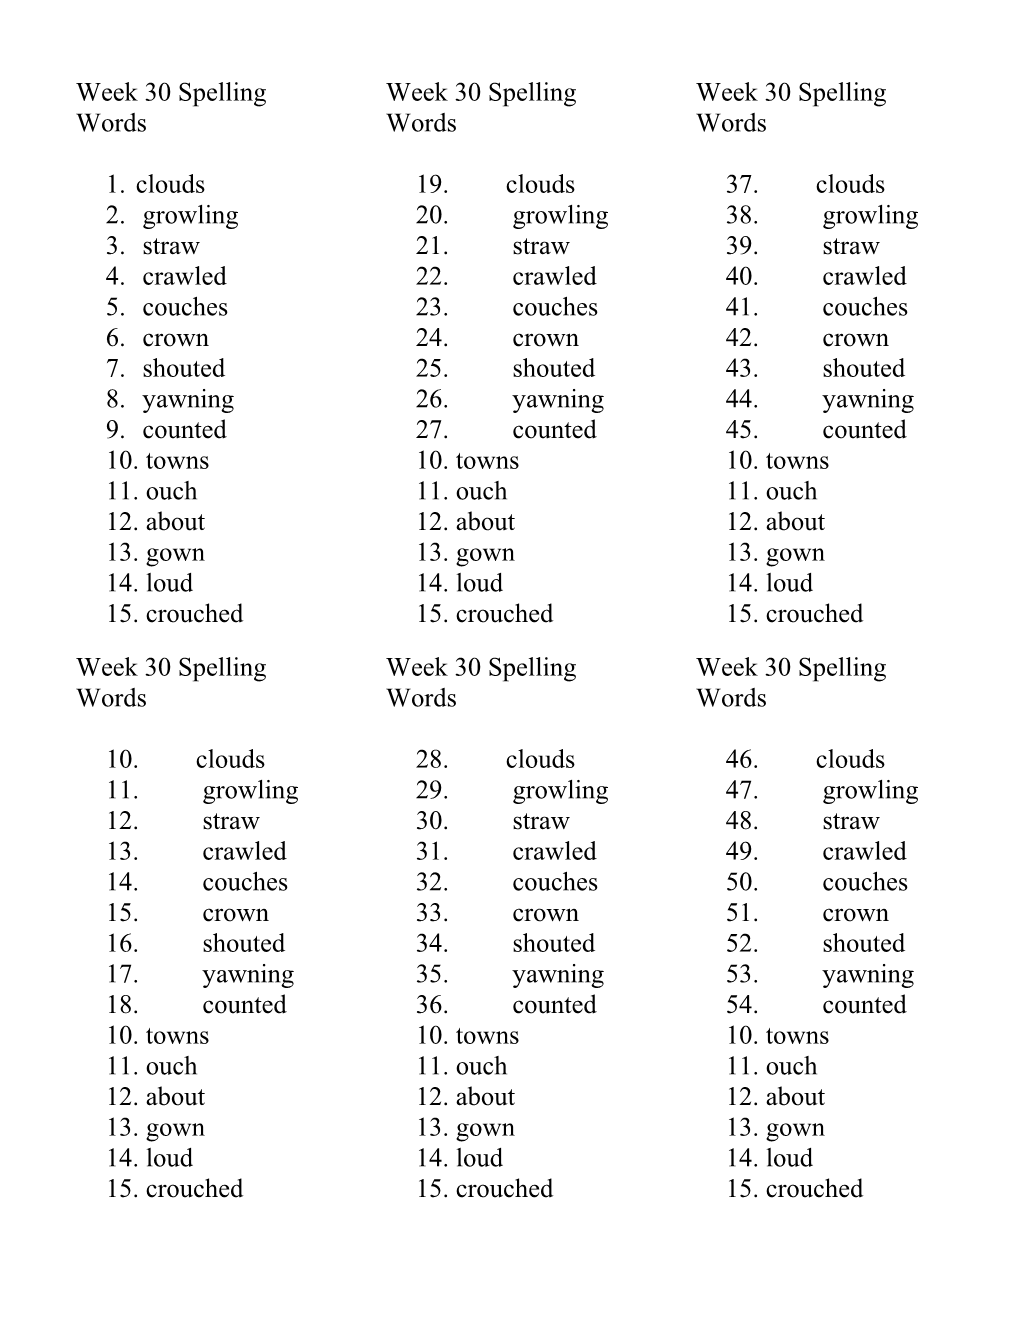 Week 30 Spelling Words